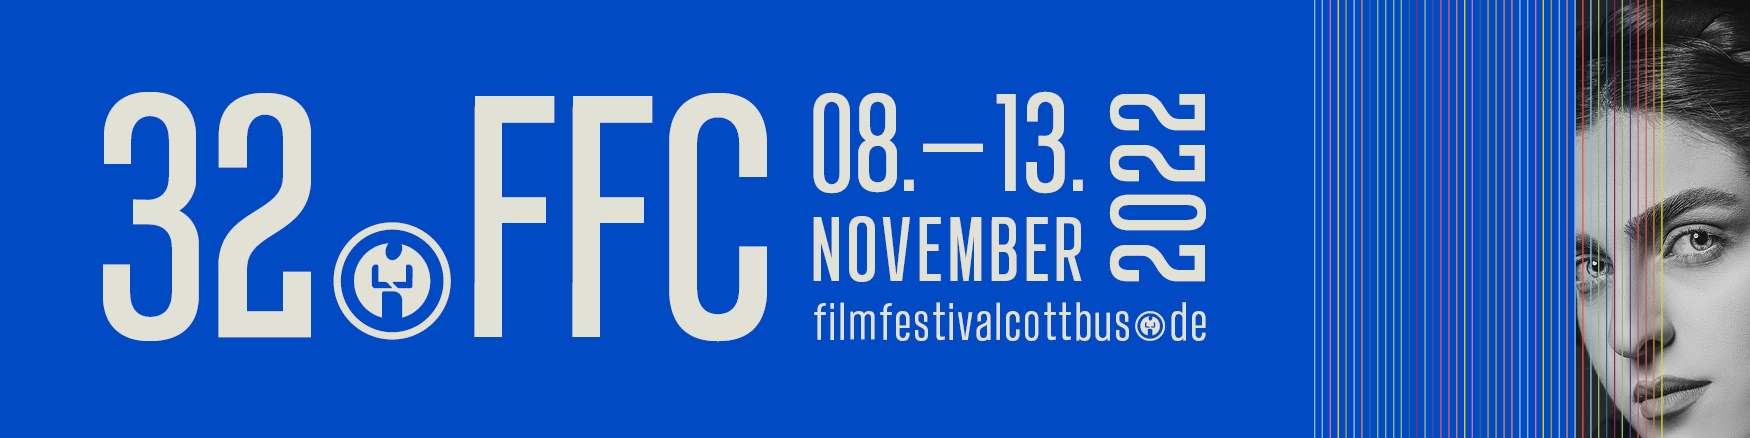 32. Filmfestival Cottbus geht an den Start